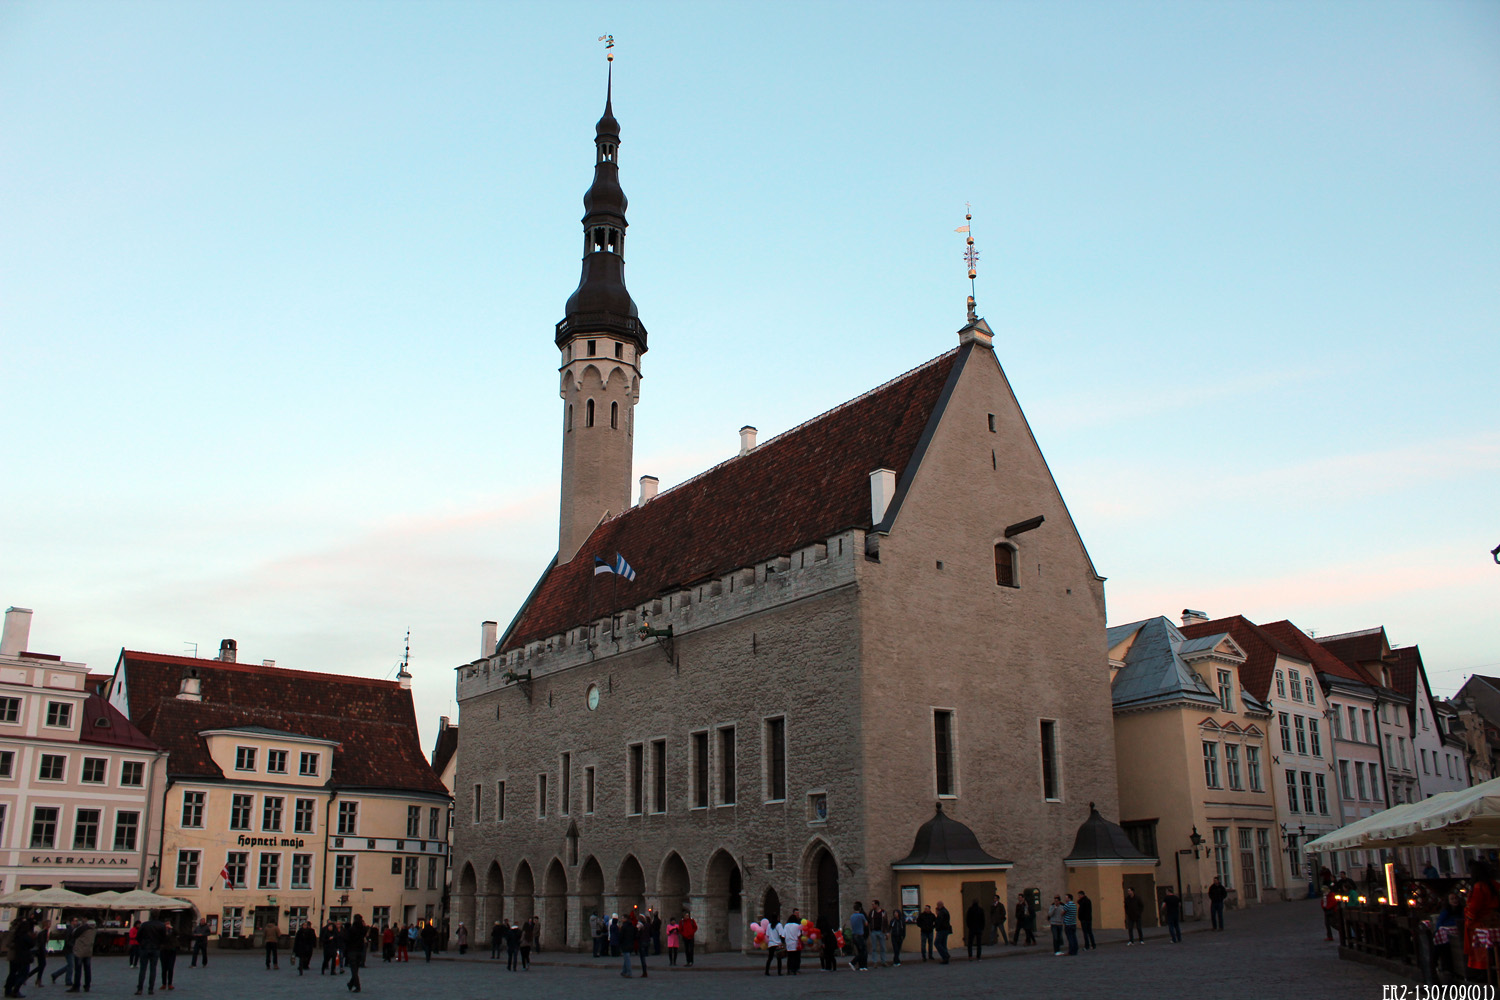 Tallinn, Raekoja, 1